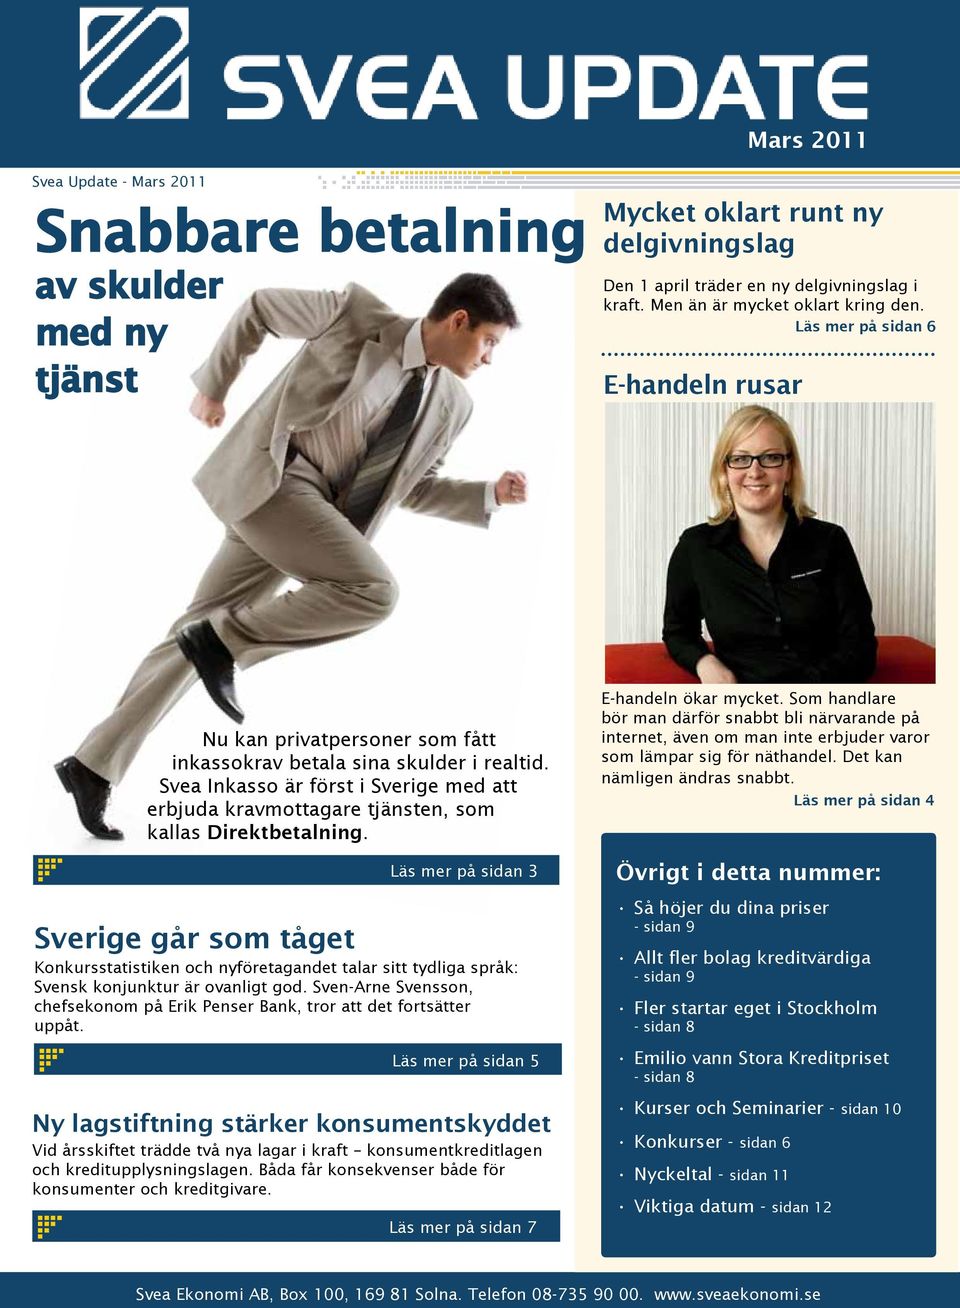 Svea Inkasso är först i Sverige med att erbjuda kravmottagare tjänsten, som kallas Direktbetalning.